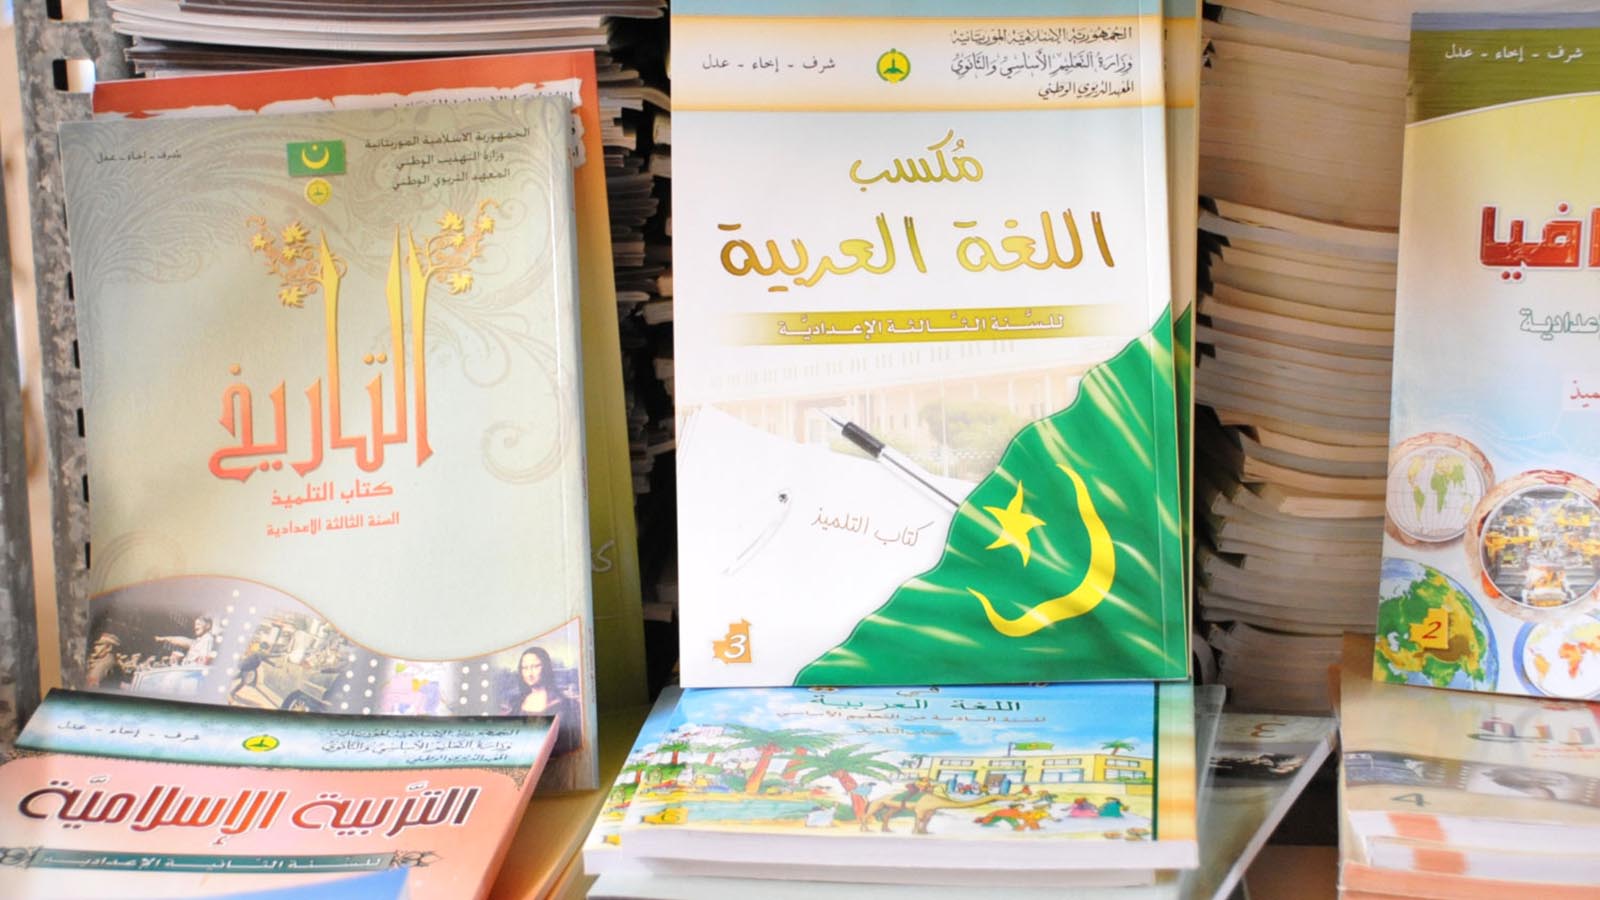 رغم طغيان الفرنسية في موريتانيا لا تزال اللغة العربية حاضرة في الكتاب المدرسي(الجزيرة)